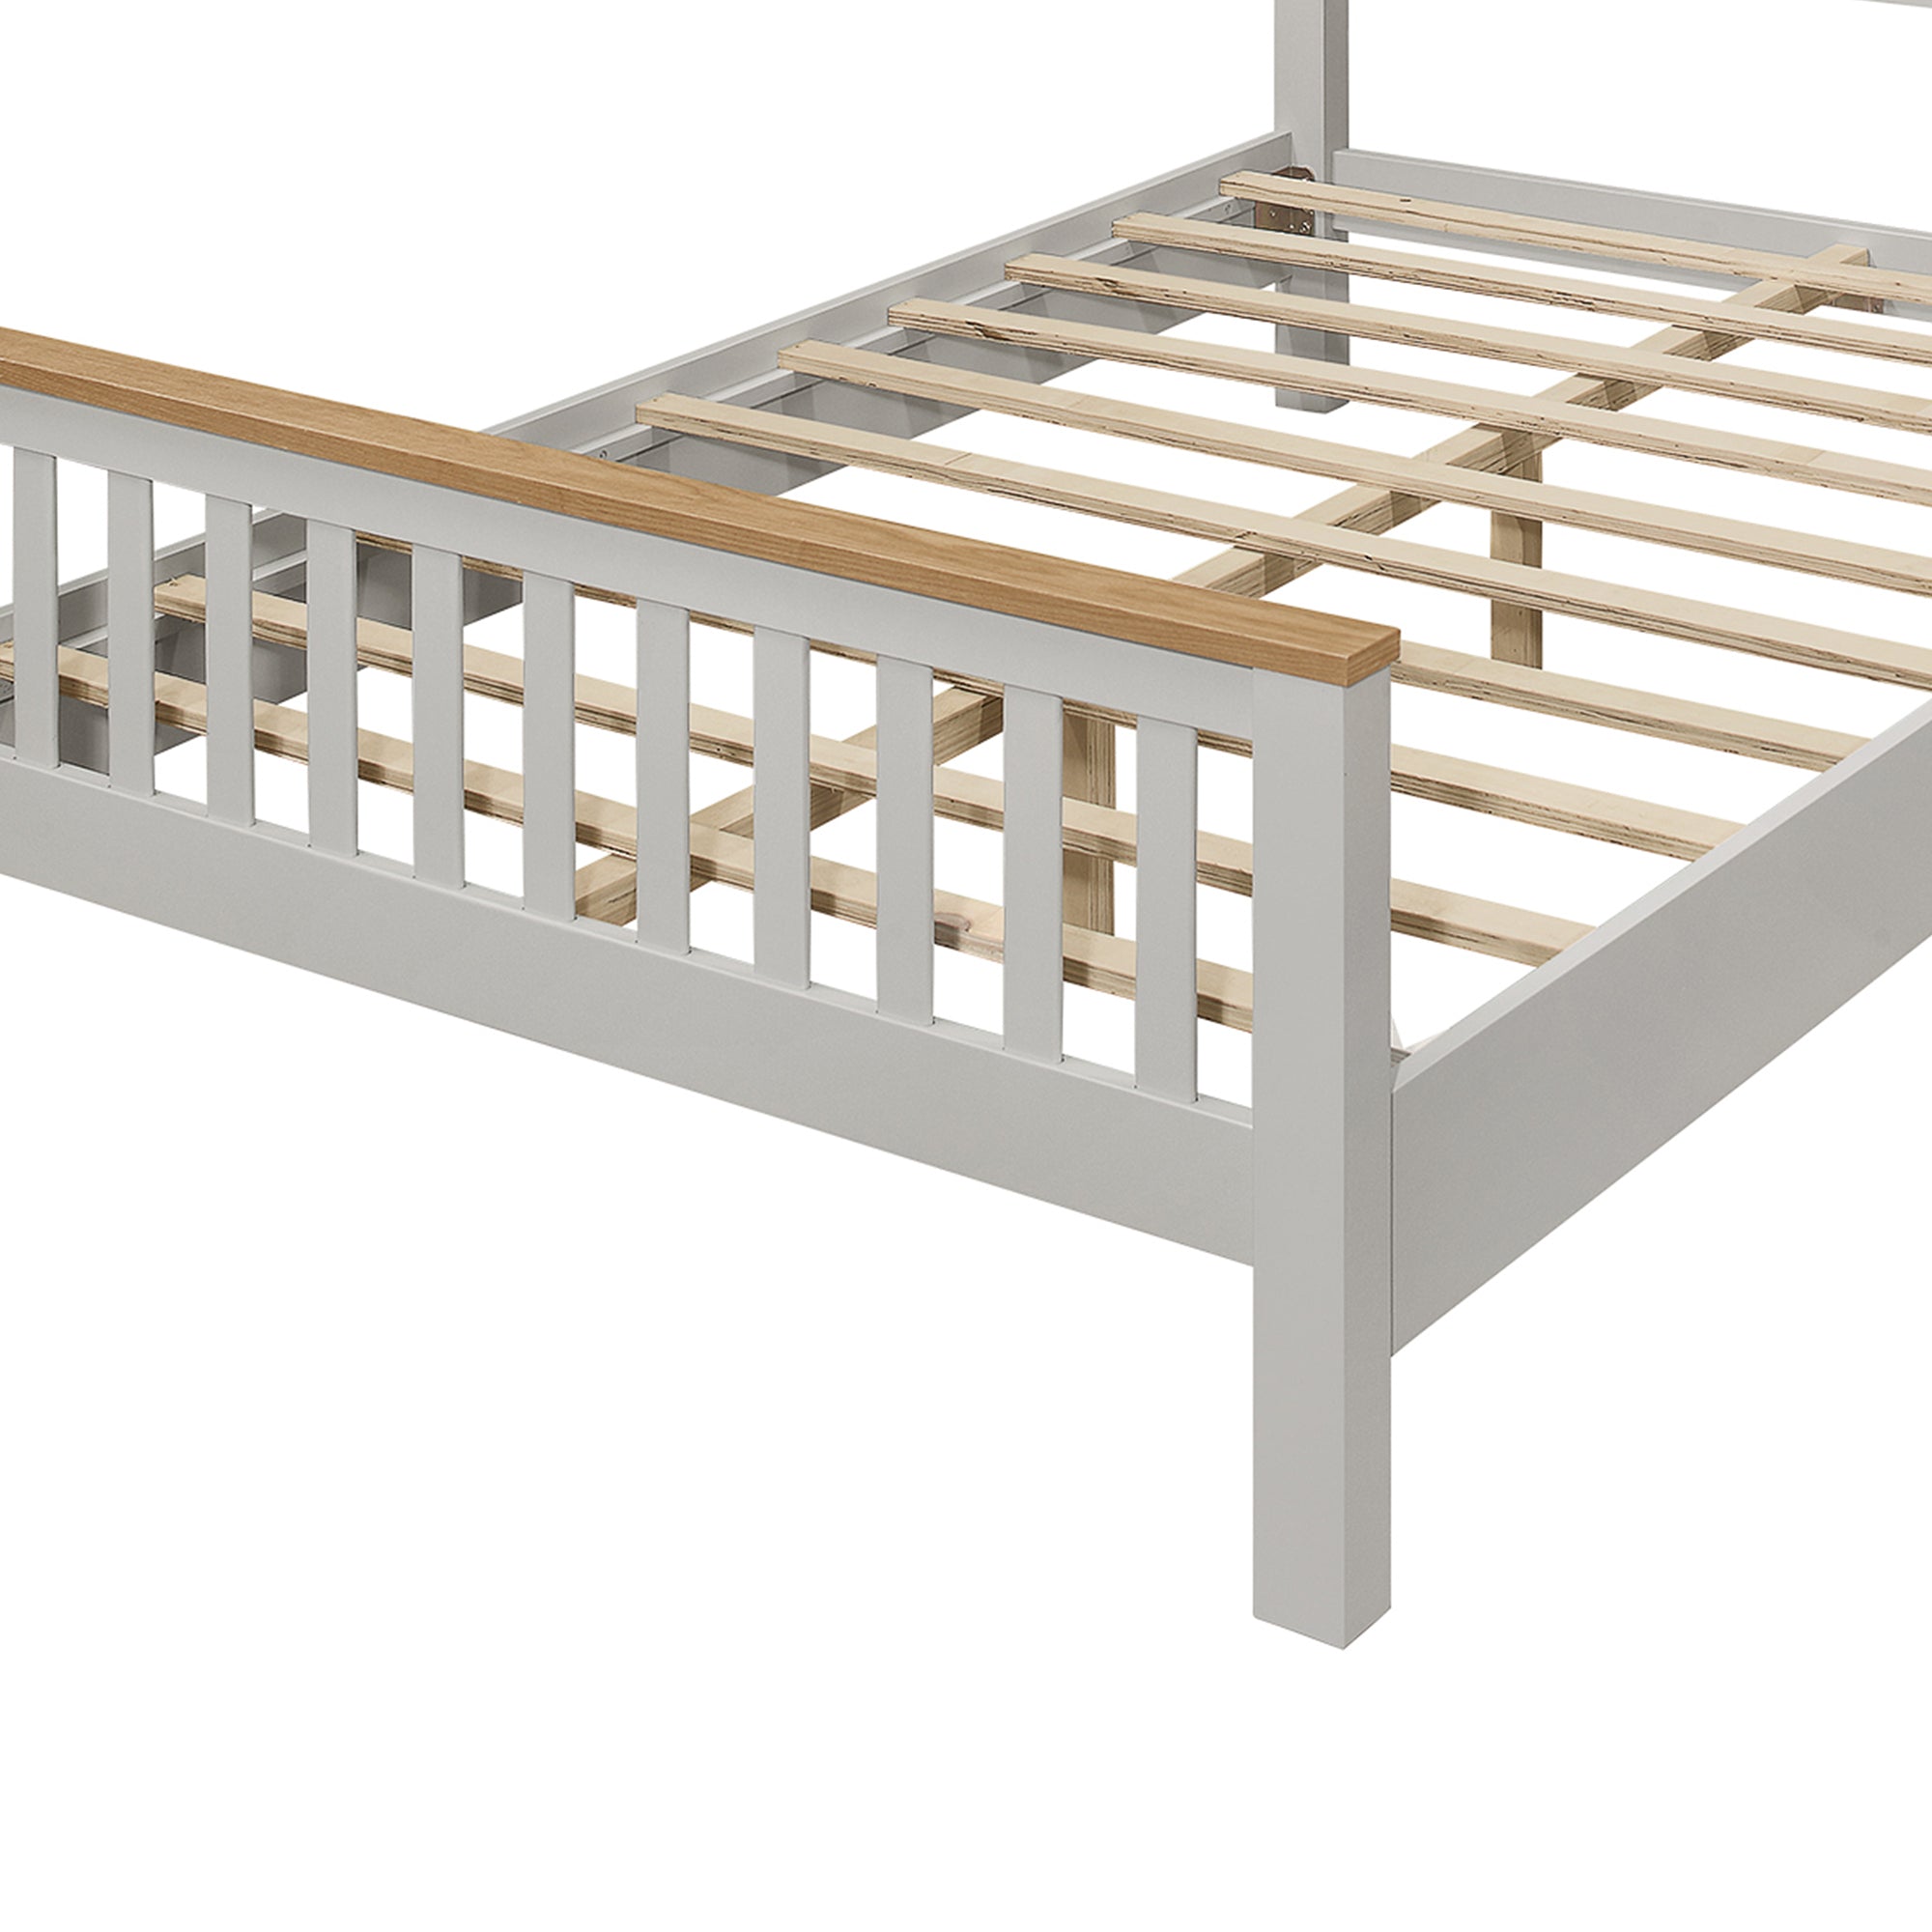 Best for Farmhouse Wooden Platform Bed Frame By: Alabama Beds